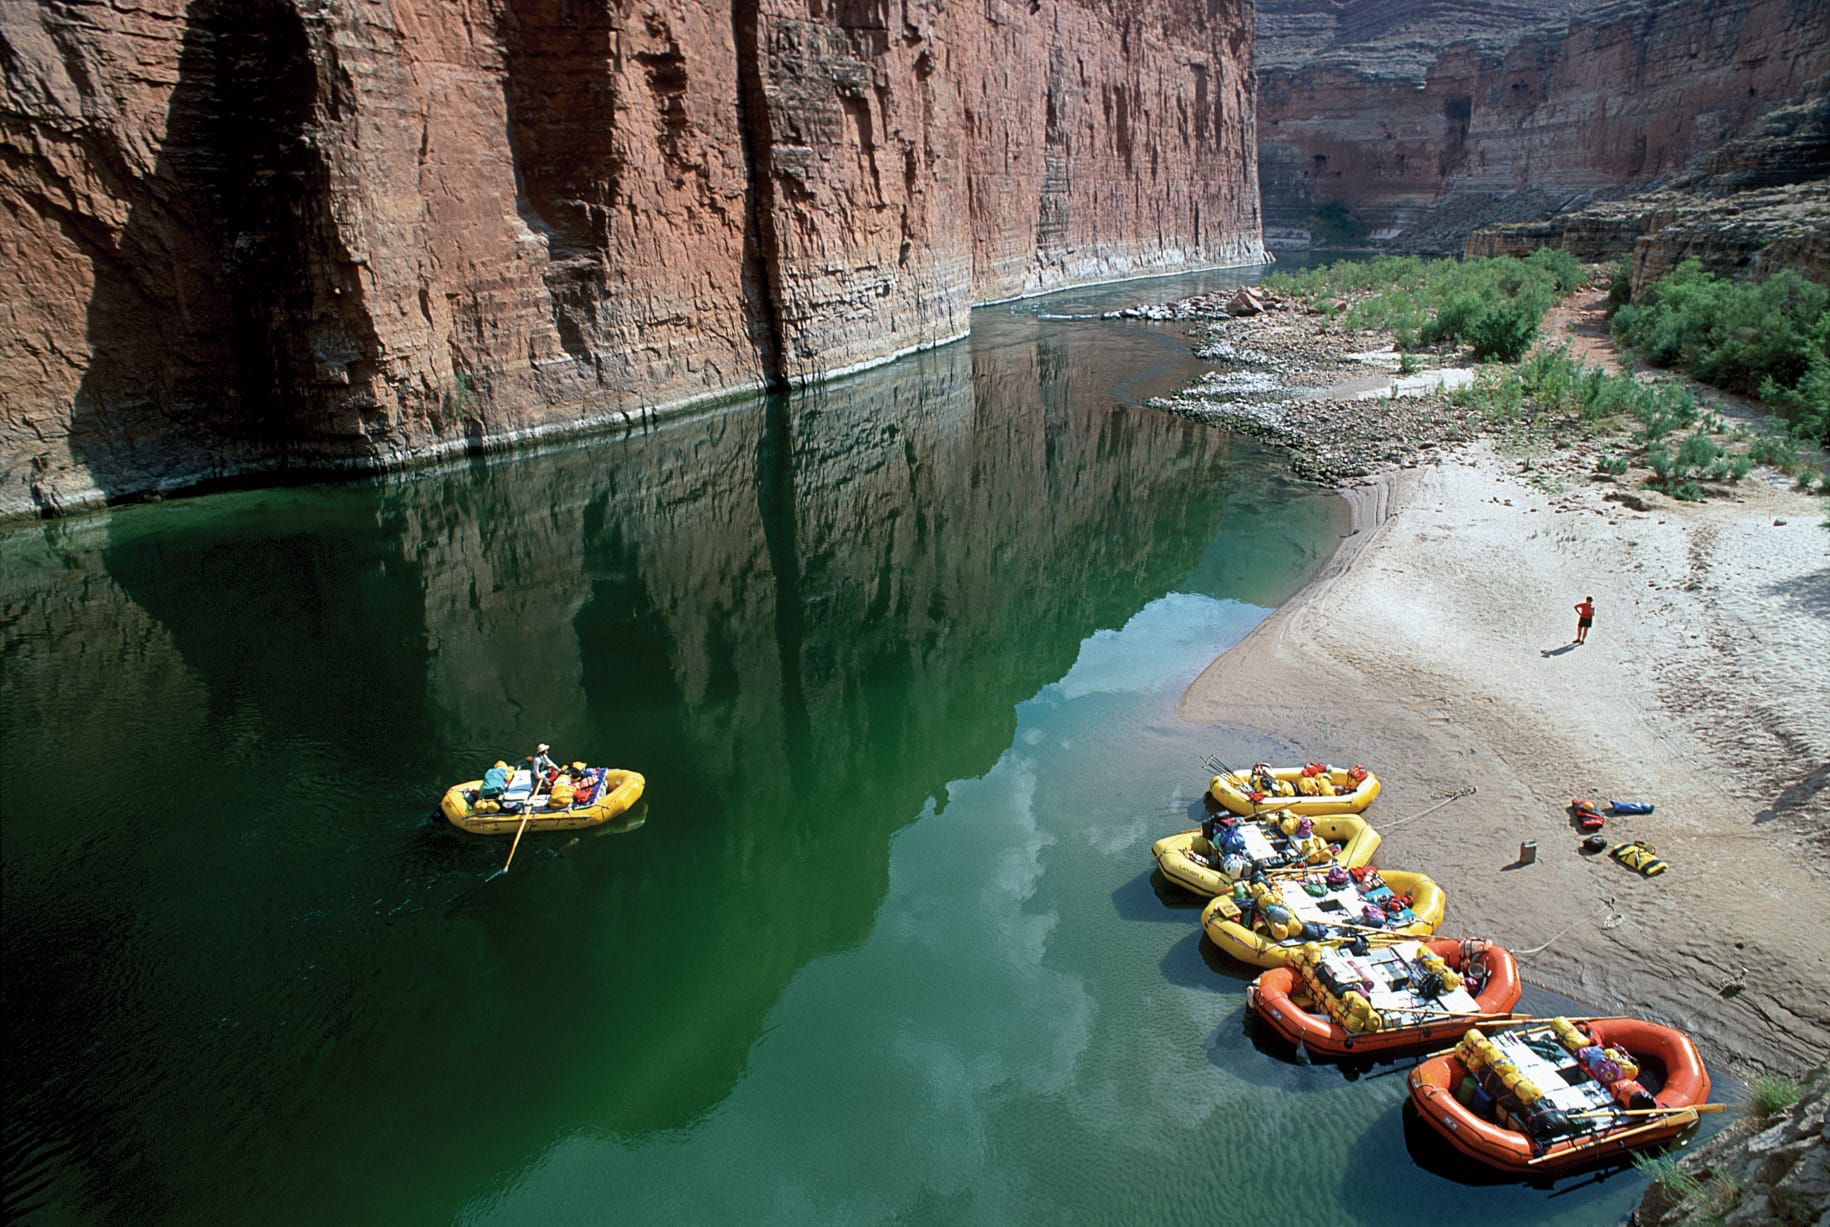 Schlauchboote in der Schlucht: Mutige Touristen zieht es zum Rafting auf den Colorado River.